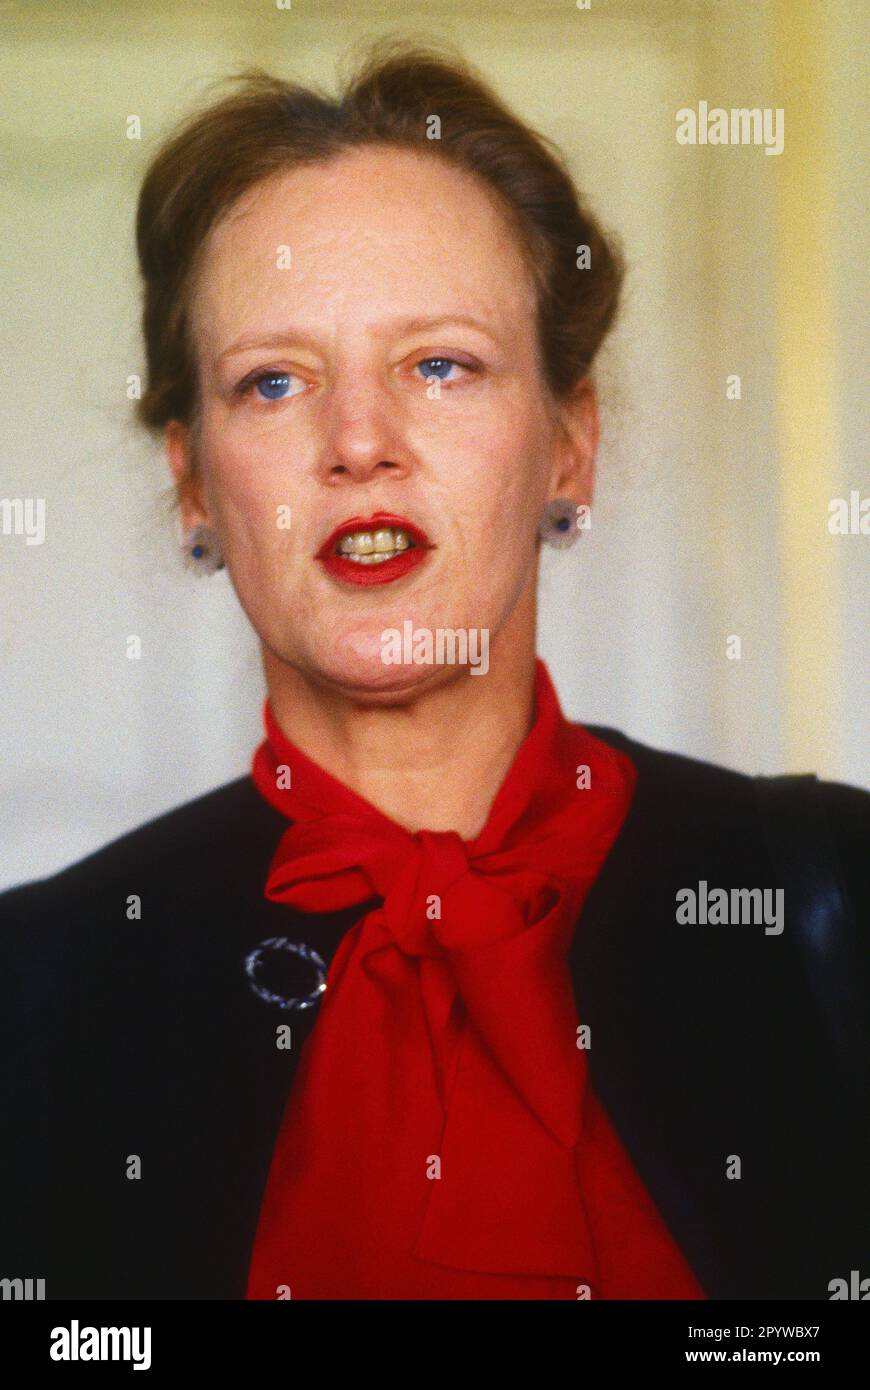 Danemark, Copenhague, 20.05.1996 Royal Danish House photo: Queen Margrethe II [traduction automatique] Banque D'Images